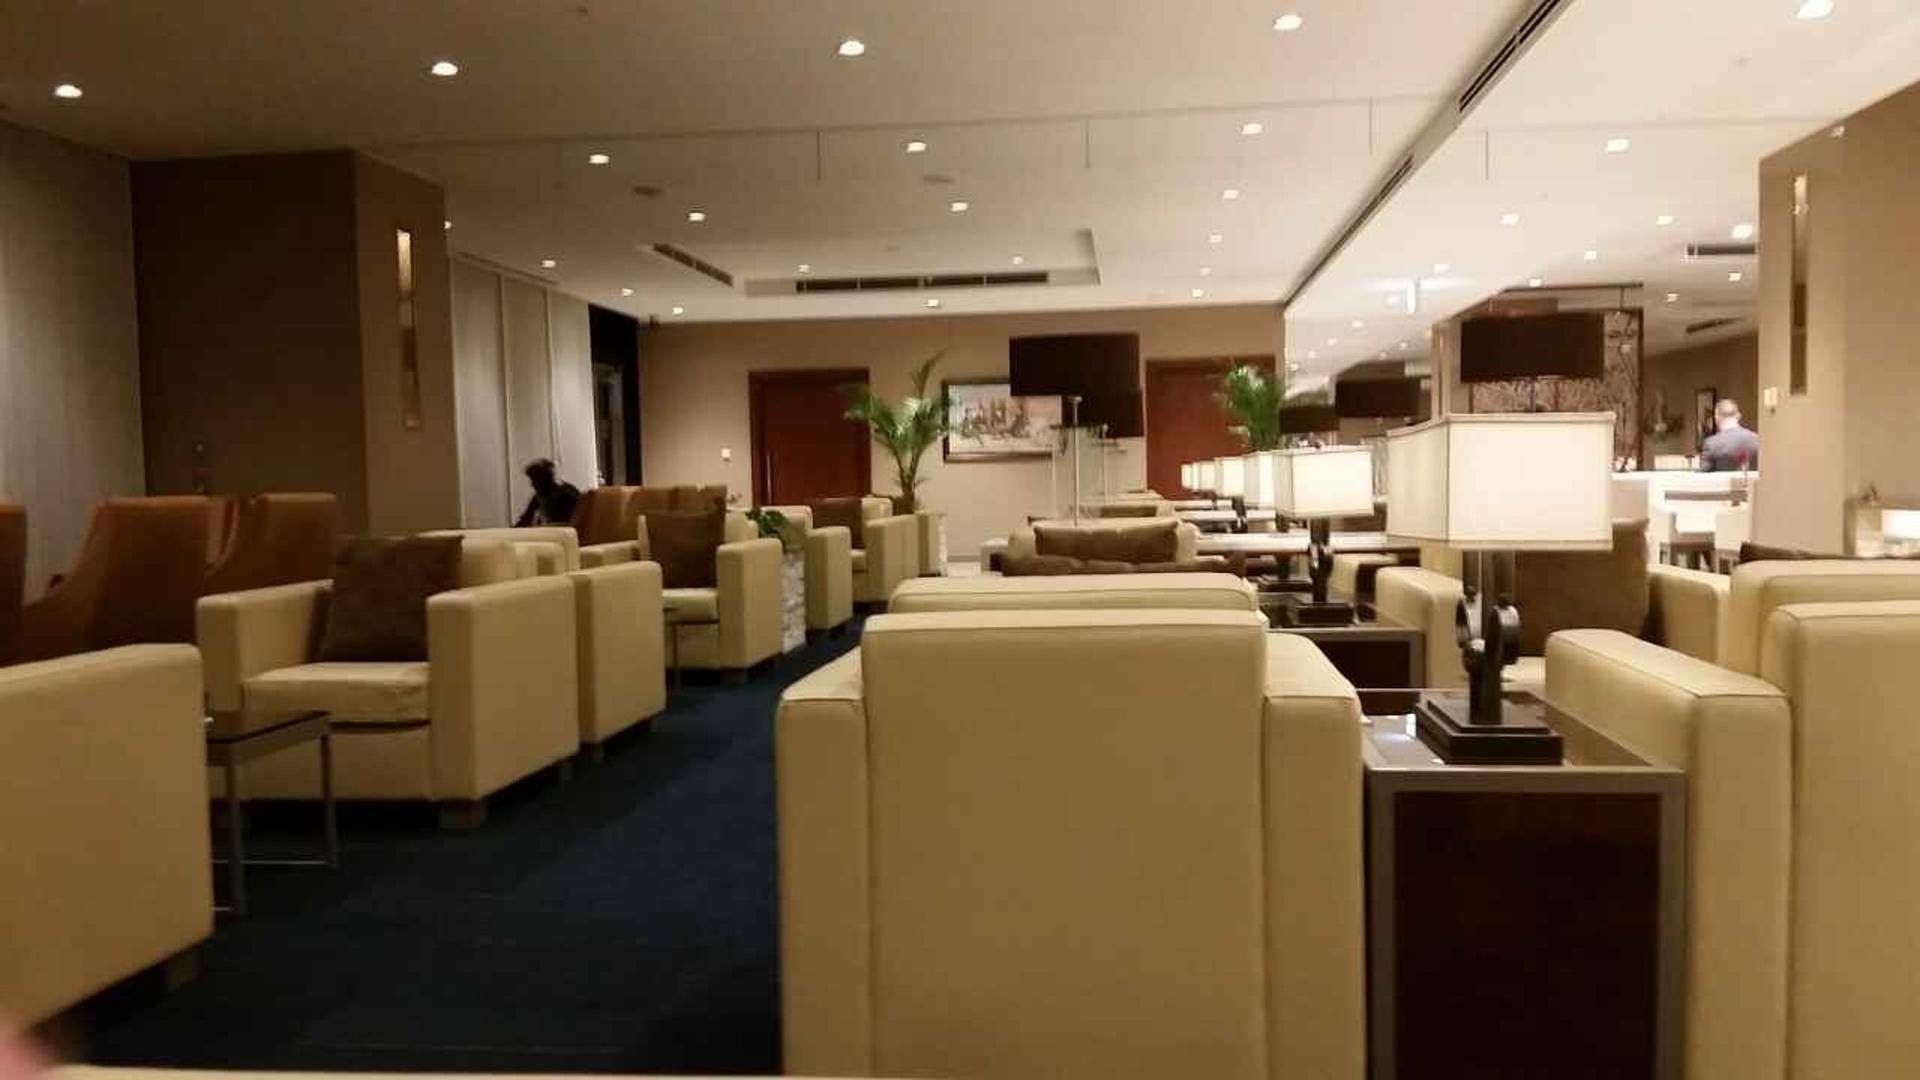 The Emirates Lounge image 1 of 9